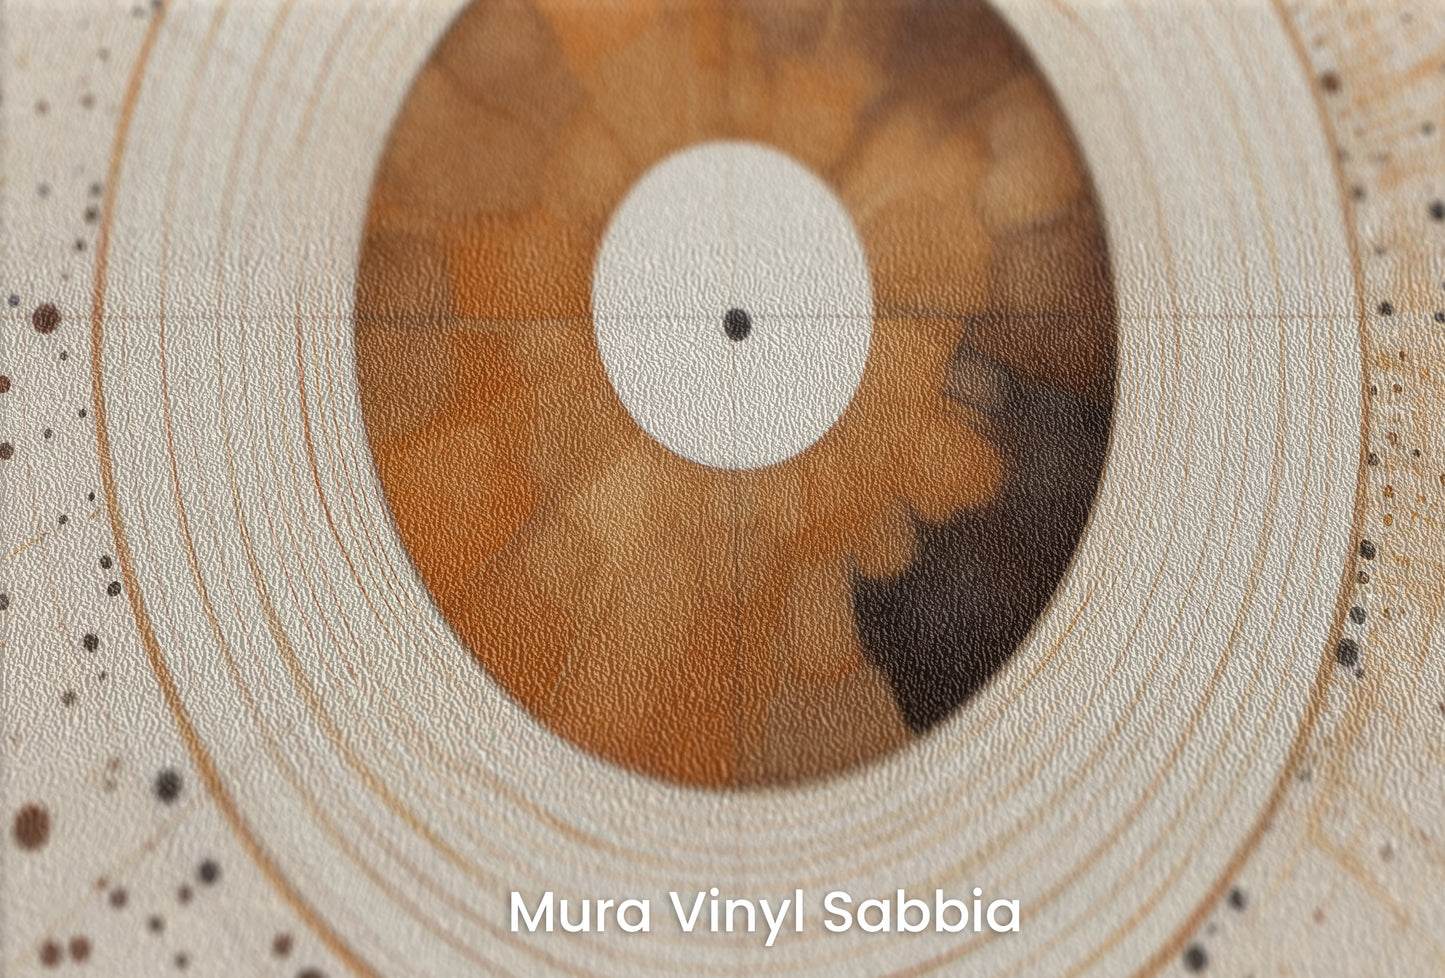 Zbliżenie na artystyczną fototapetę o nazwie SOLAR ECHO IN WARM NEUTRALS na podłożu Mura Vinyl Sabbia struktura grubego ziarna piasku.